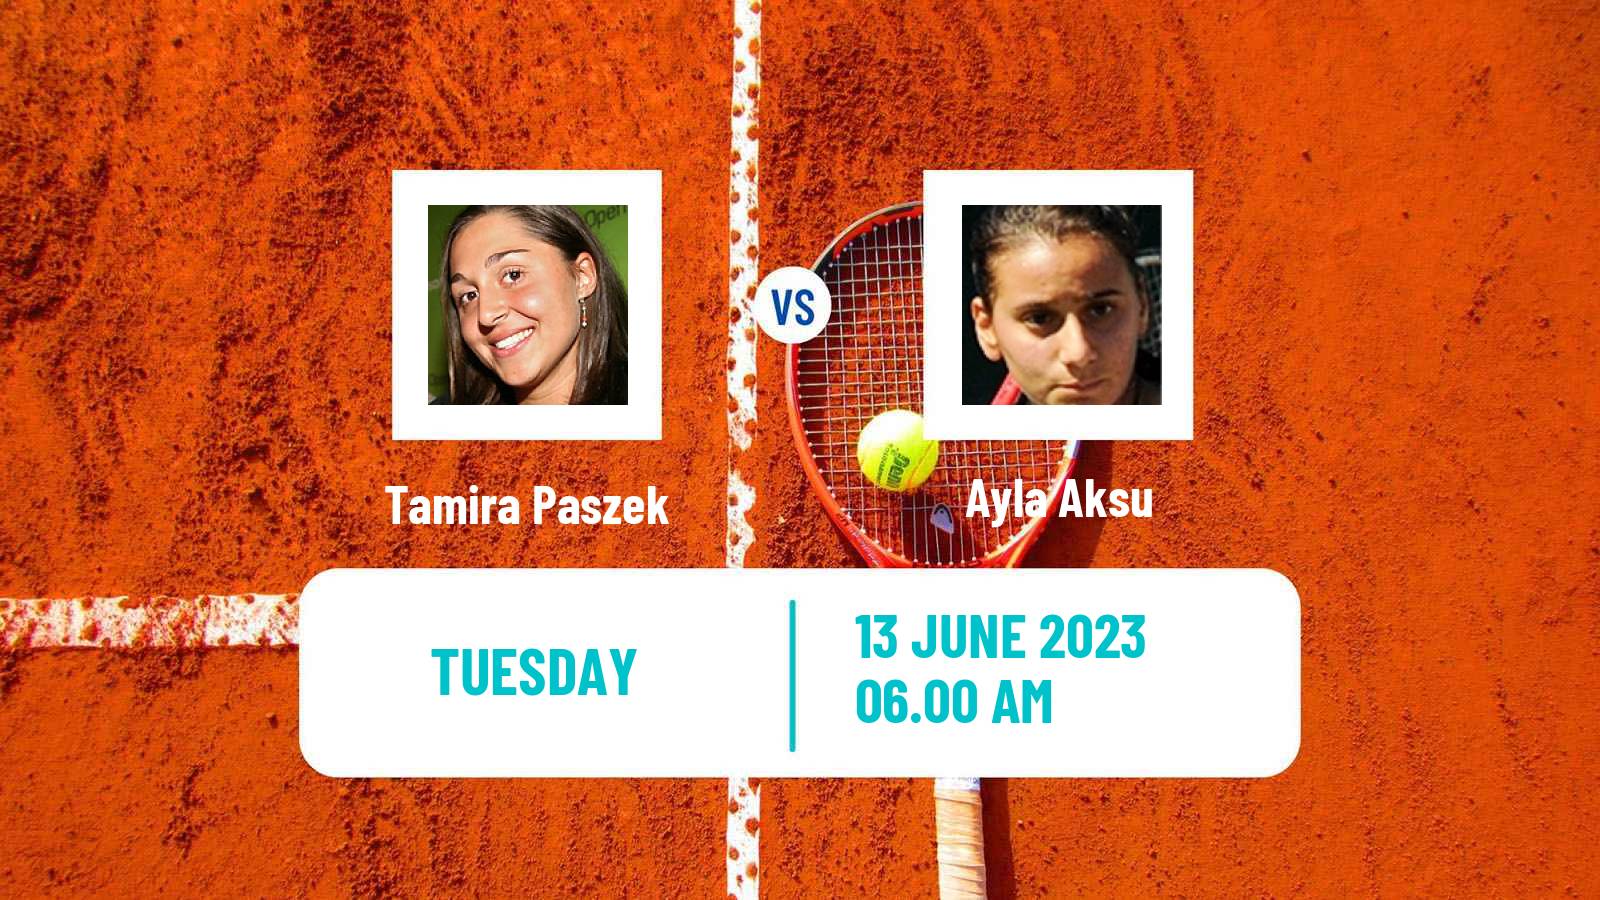 Tennis ITF W25 Guimaraes Women Tamira Paszek - Ayla Aksu